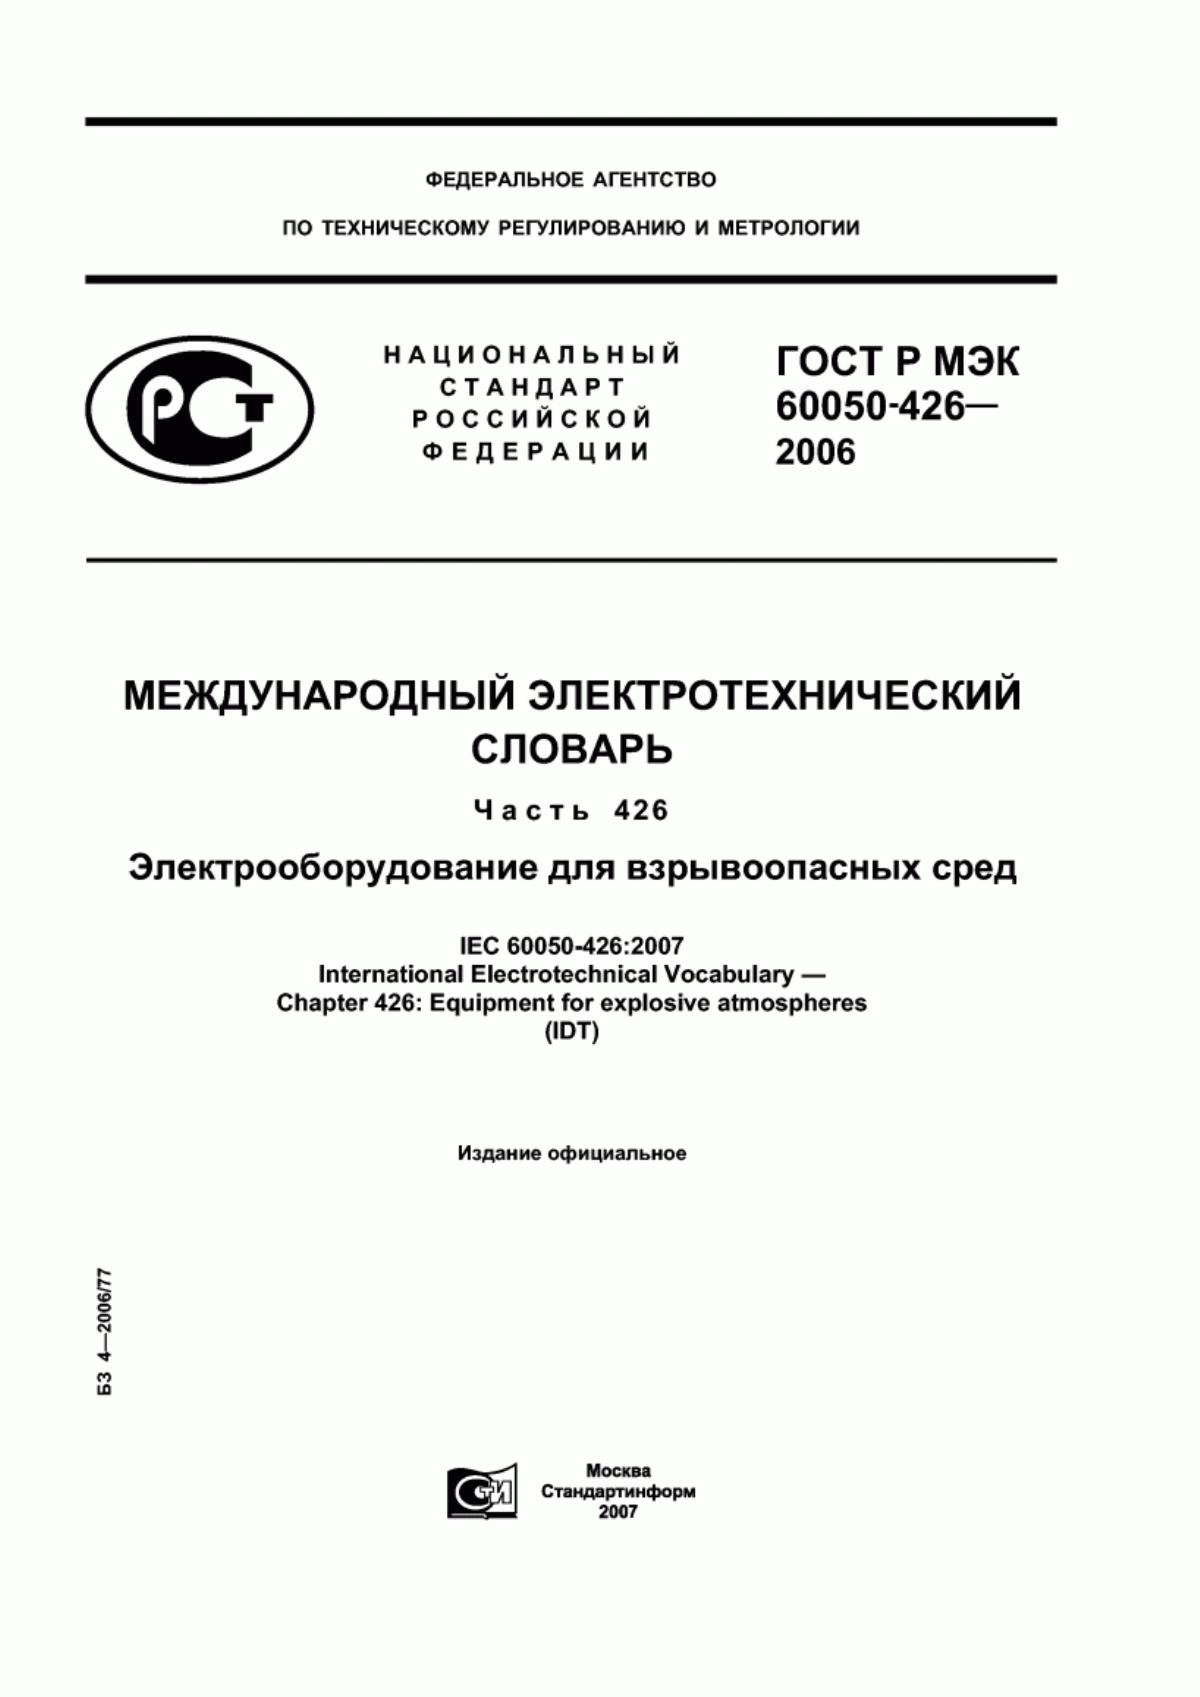 ГОСТ Р МЭК 60050-426-2006 Международный электротехнический словарь. Часть 426. Электрооборудование для взрывоопасных сред